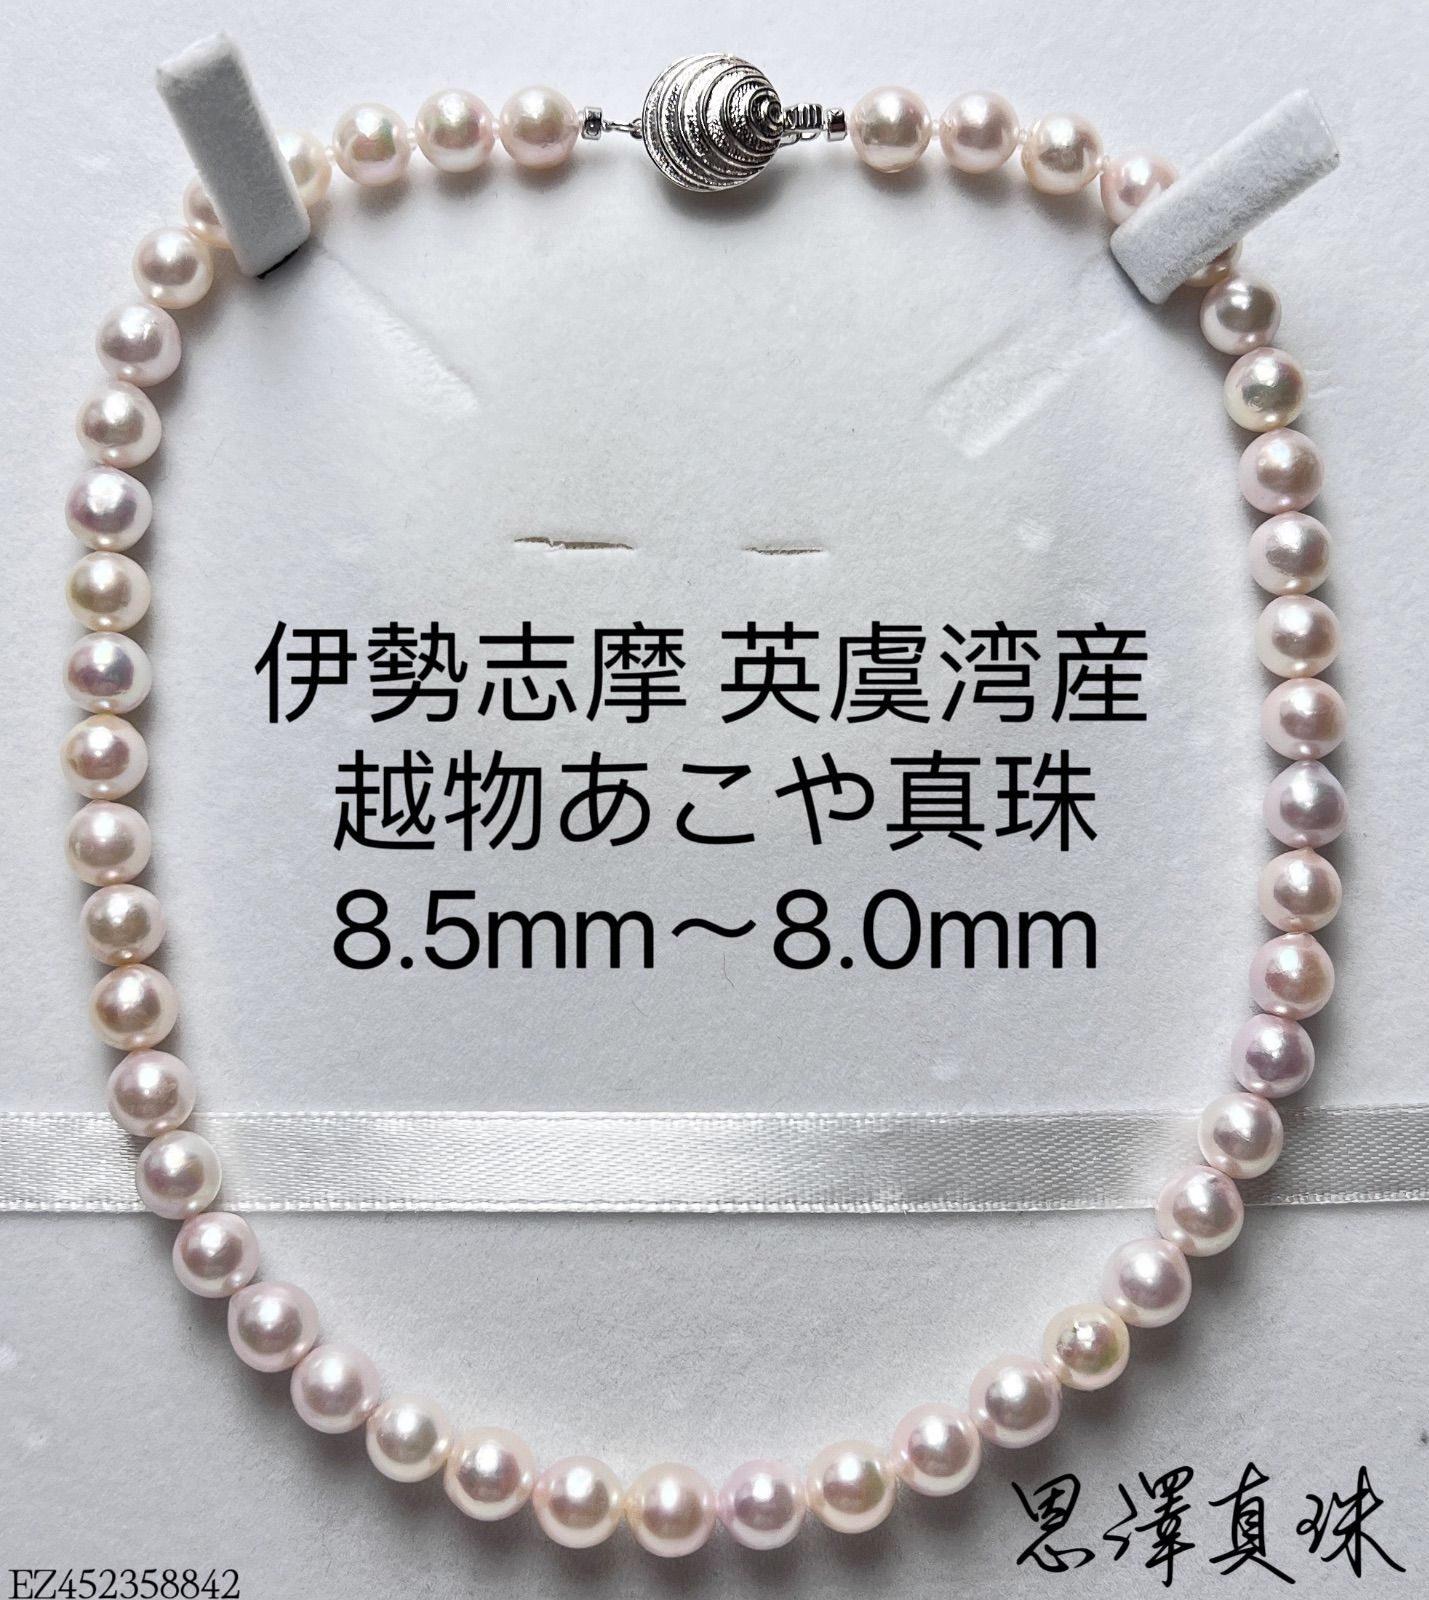 伊勢志摩 英虞湾産 越物あこや真珠 大珠8.5mm 超稀少色 ホワイトグレー 